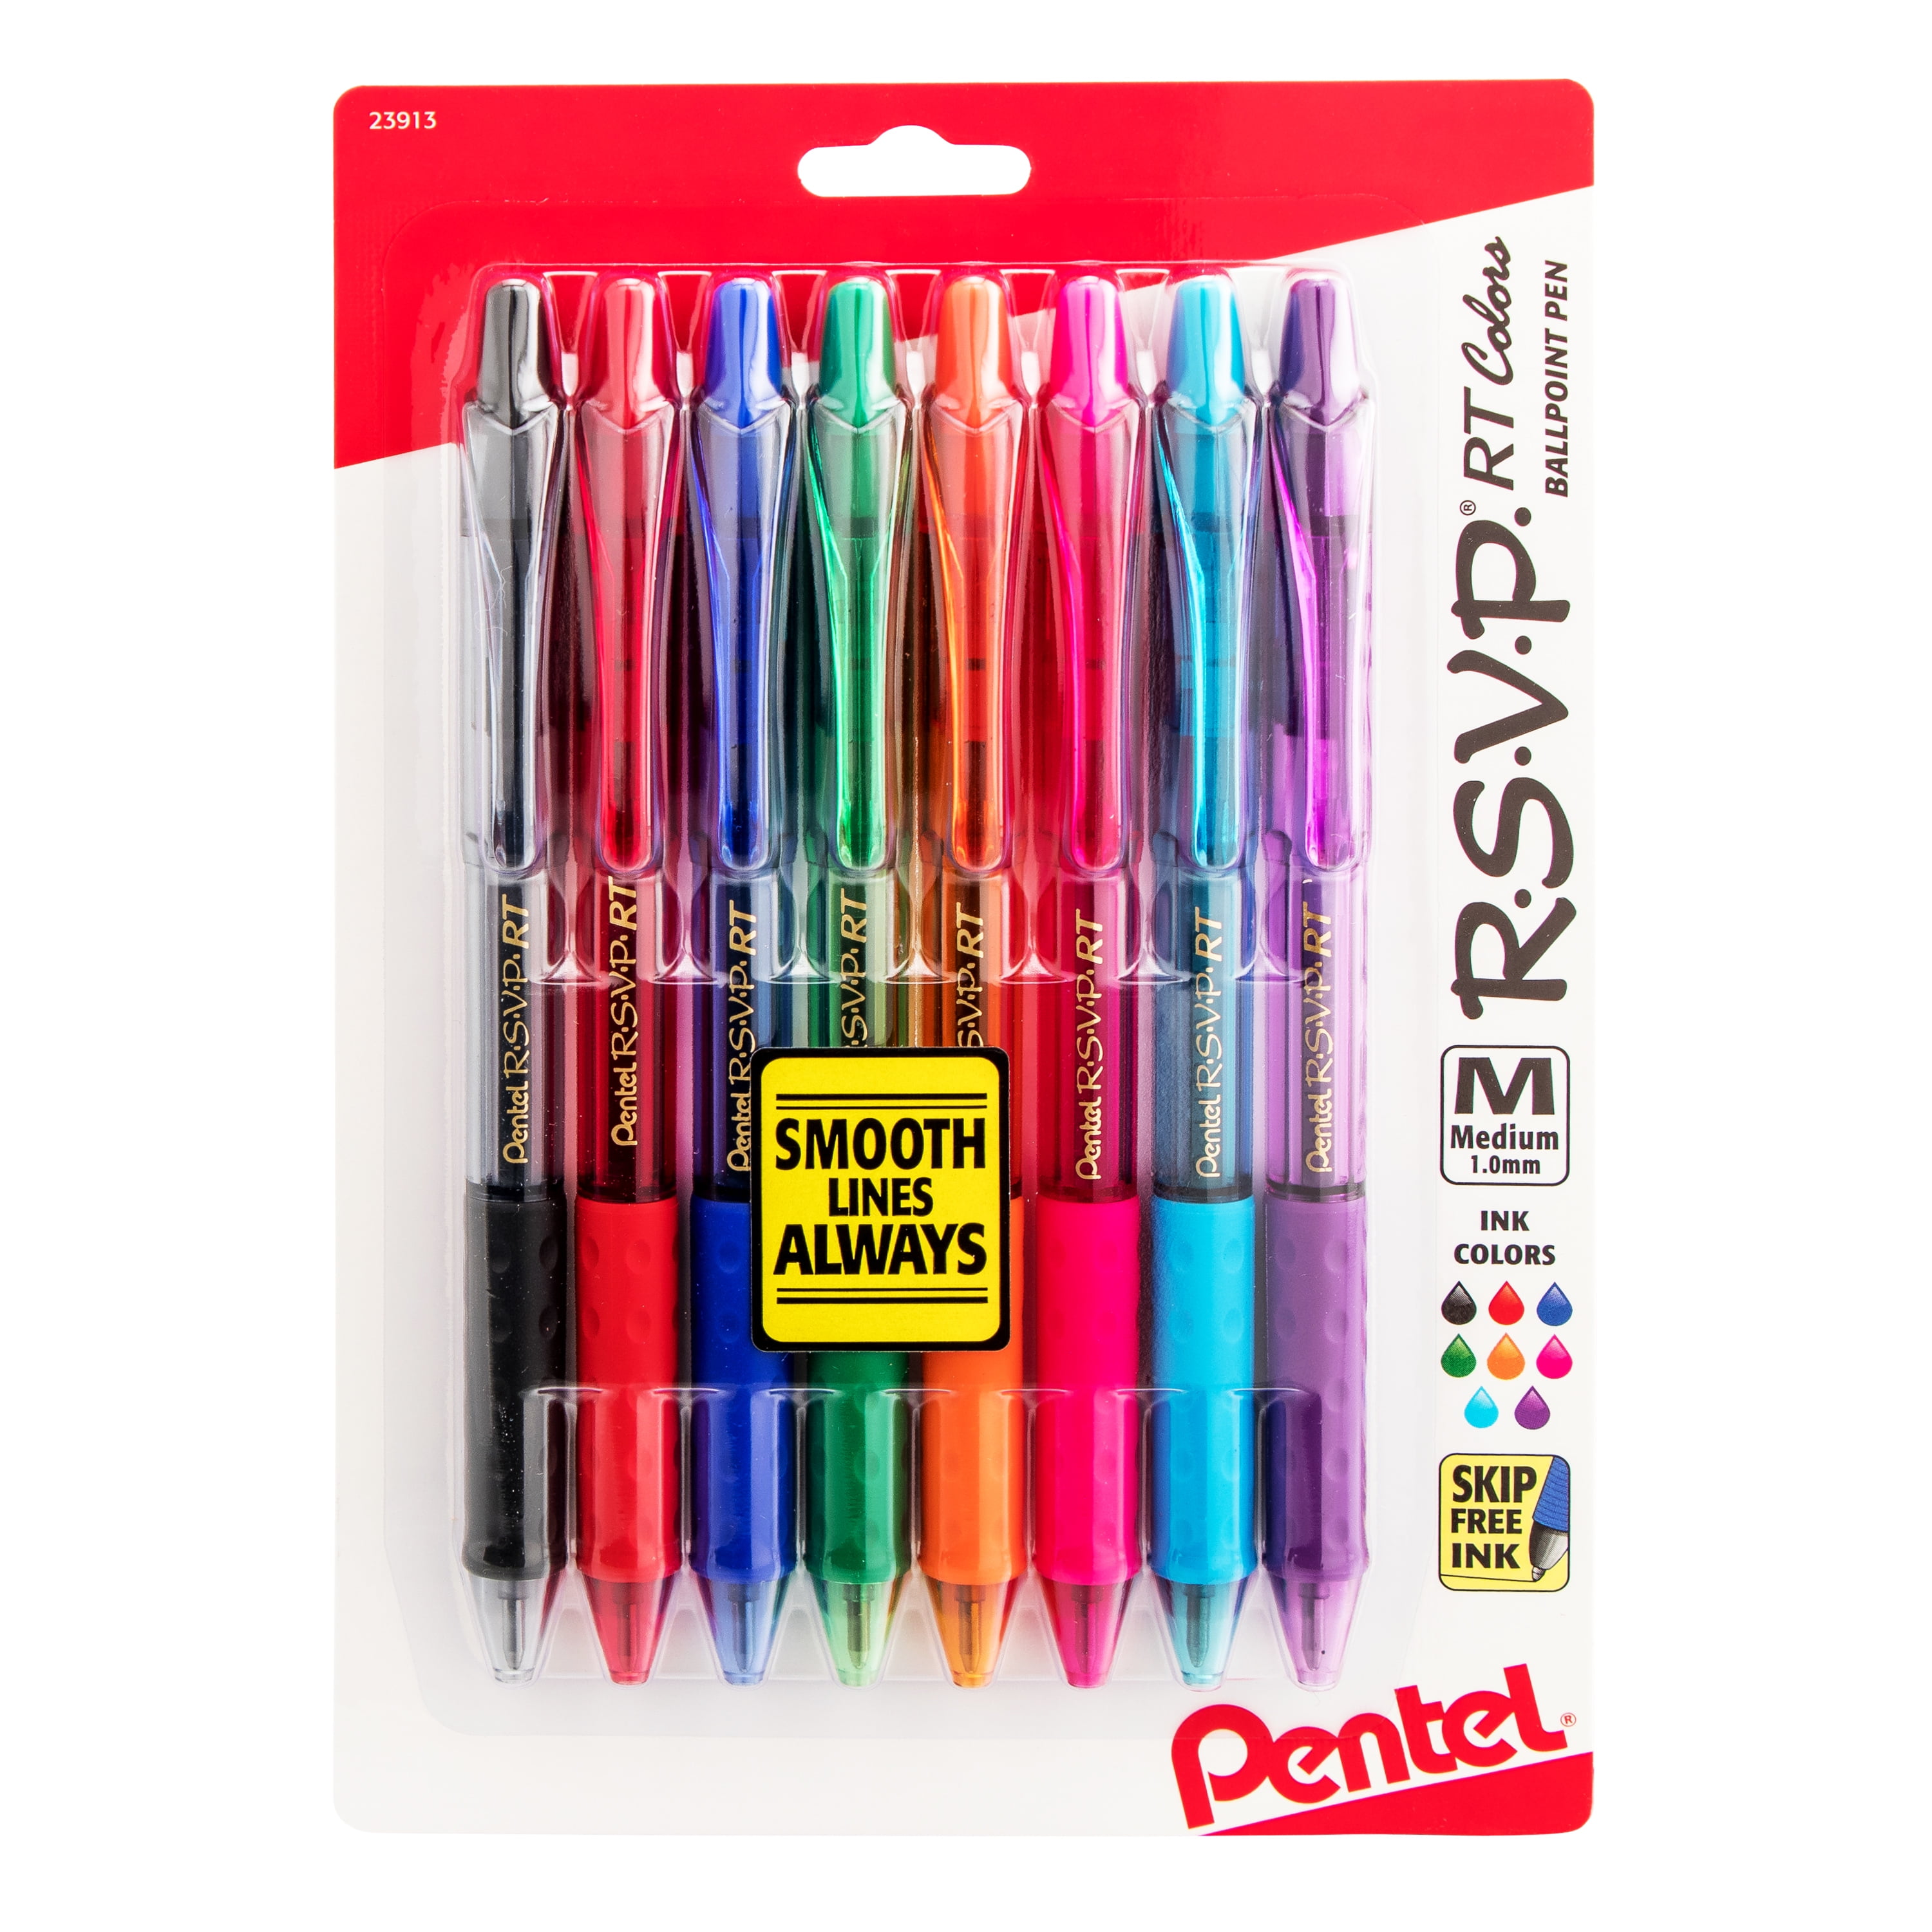 Writech Gel Ink Retractable Pens: Assorted Colors Ink 0.7mm Medium